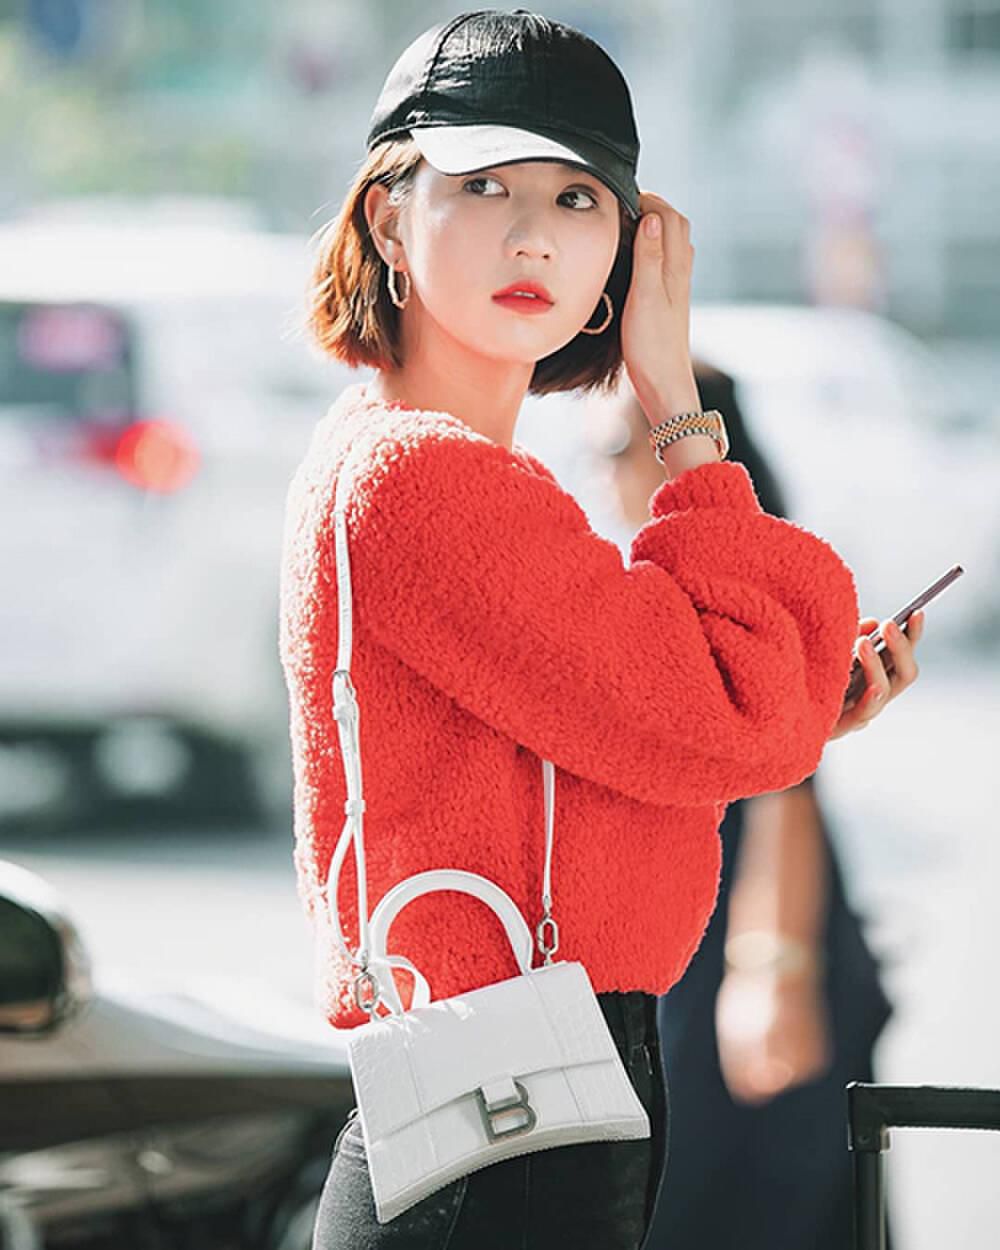 Người đẹp chọn cho mình kiểu áo sweater nổi bật với logo Chanel, kết hợp túi Balenciaga tạo nên diện mạo ấn tượng.